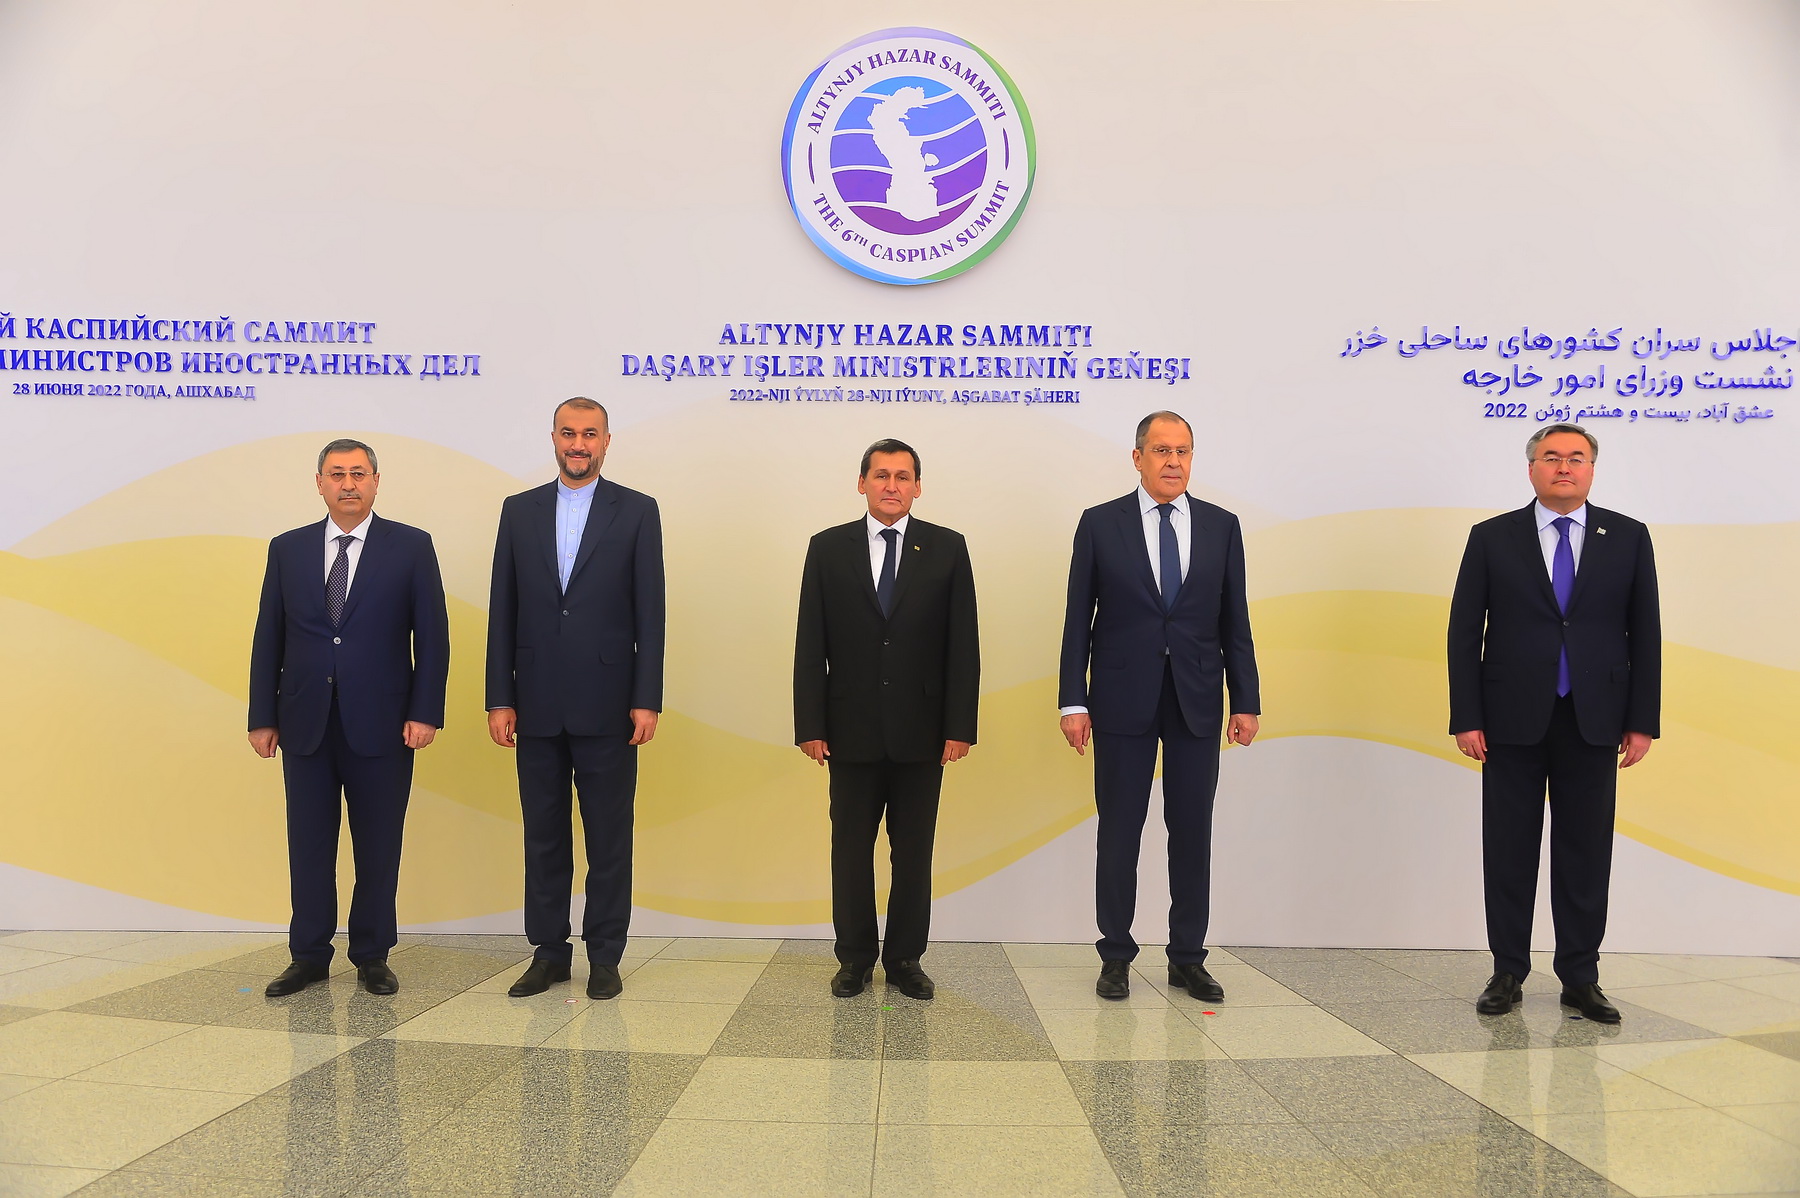 6 Каспийский саммит в Ашхабаде. Саммит прикаспийских государств 2022. Каспийский саммит в Туркменистане встреча Путина. Шестой Каспийский саммит 29 июня 2022 года, Ашхабад.